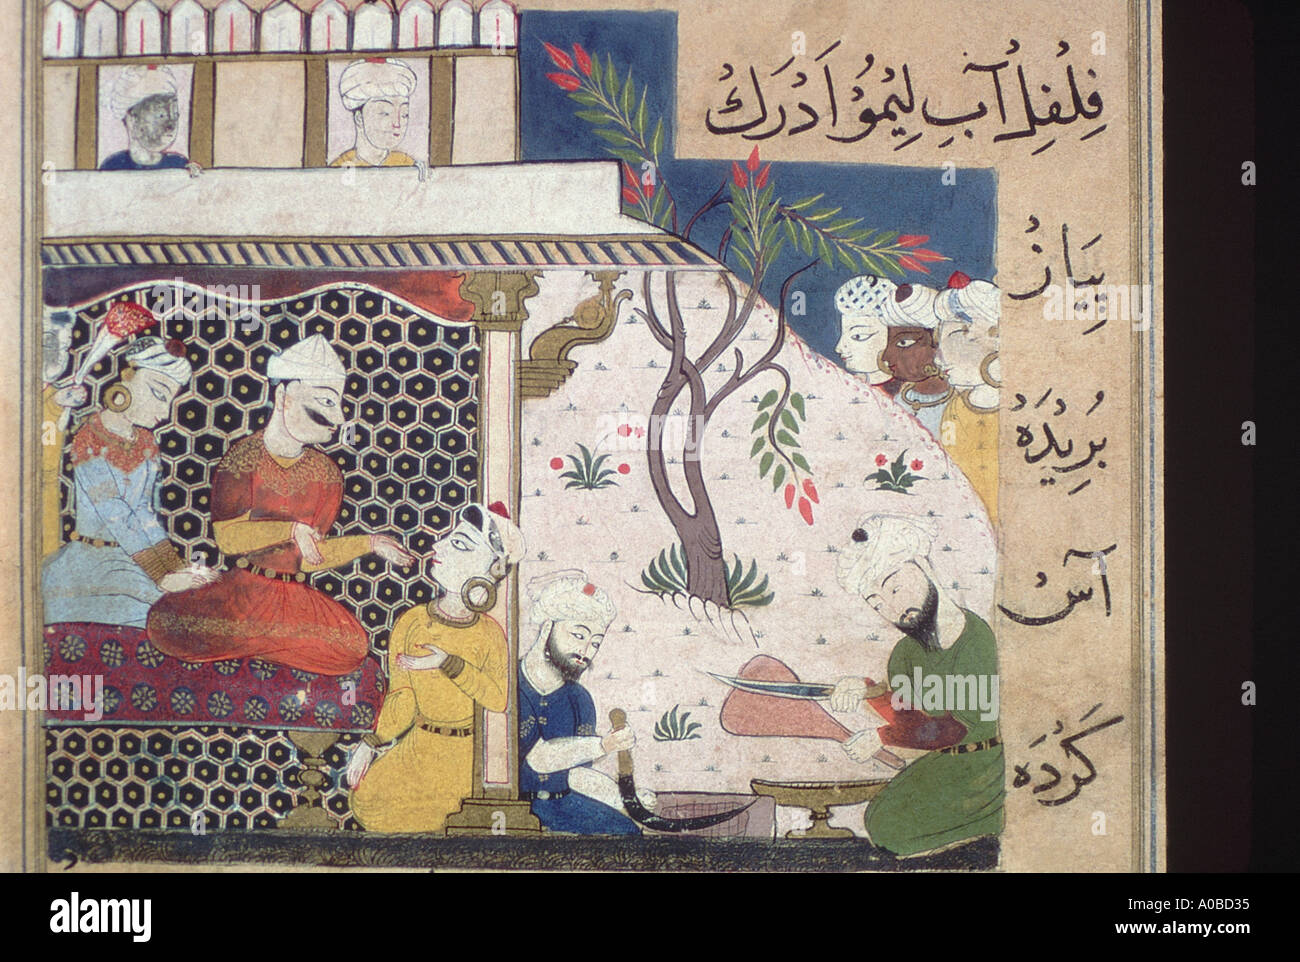 Gemälde zeigt Schlachtereien zerkleinern Fleisch für eine Konditorei-Füllung. Datiert: 1505 A.D. Nimat-Nama. Stockfoto